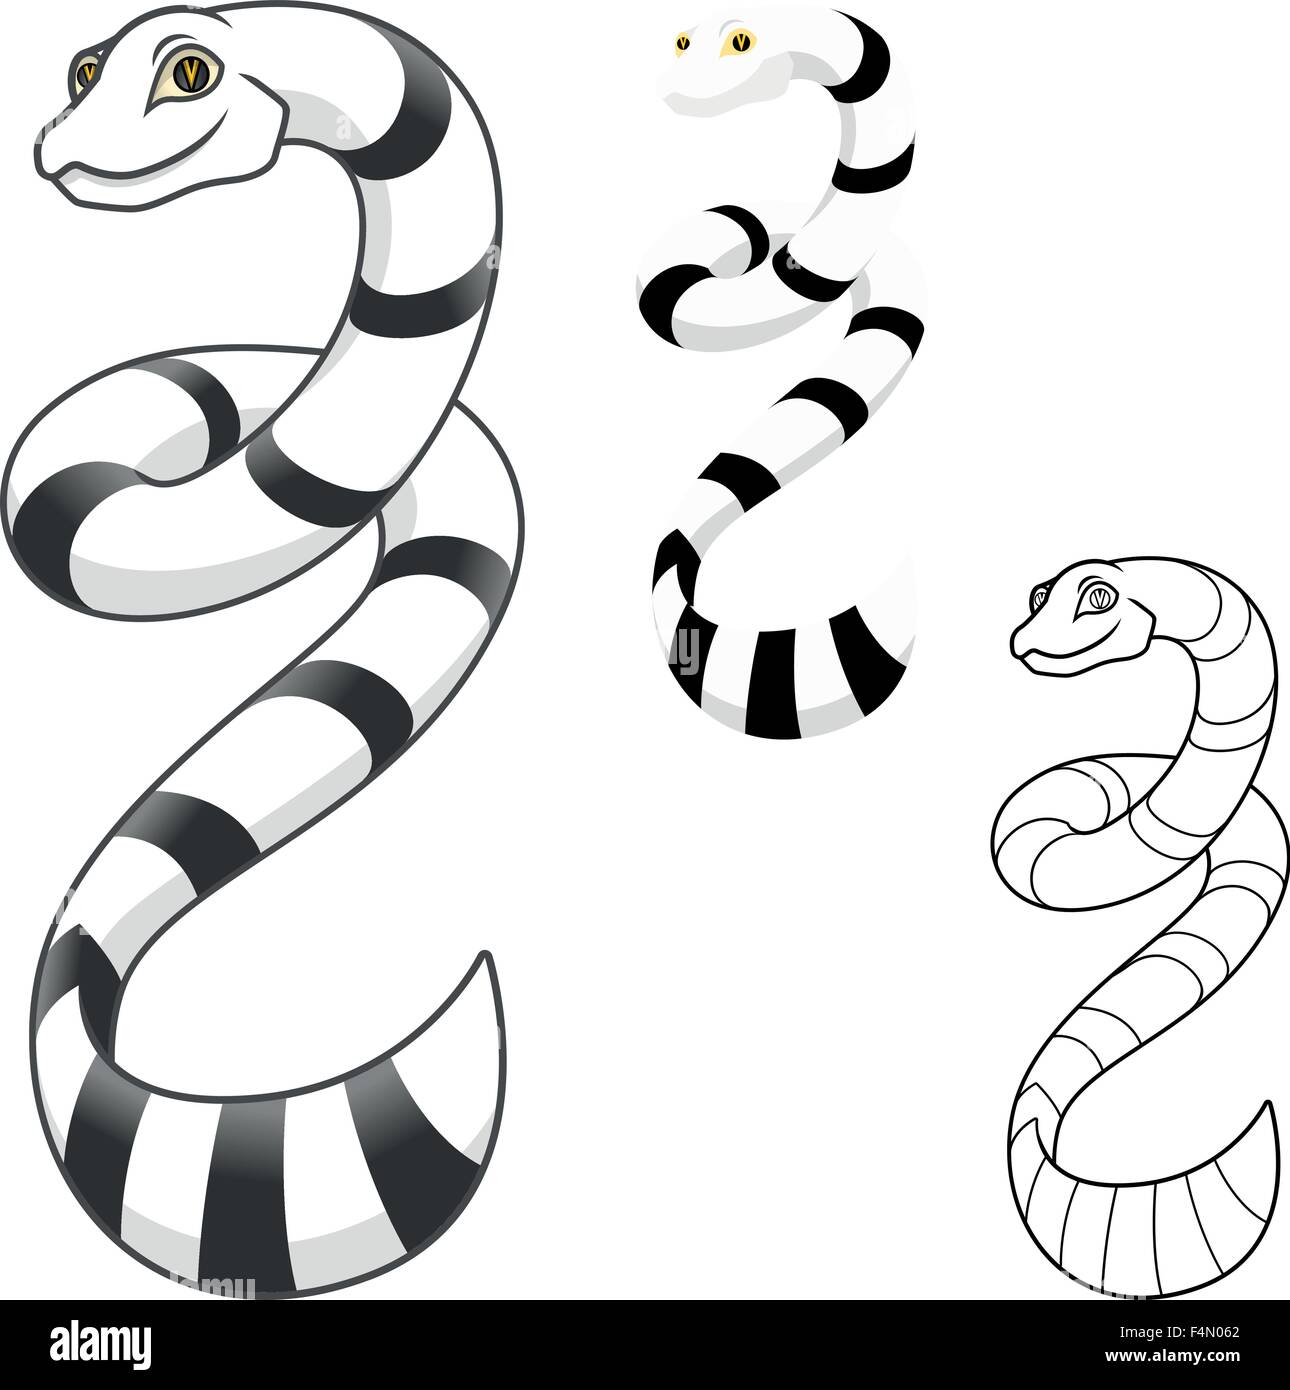 Alta qualità di serpente di mare personaggio dei fumetti includono design piatto e Line Art versione Illustrazione Vettoriale